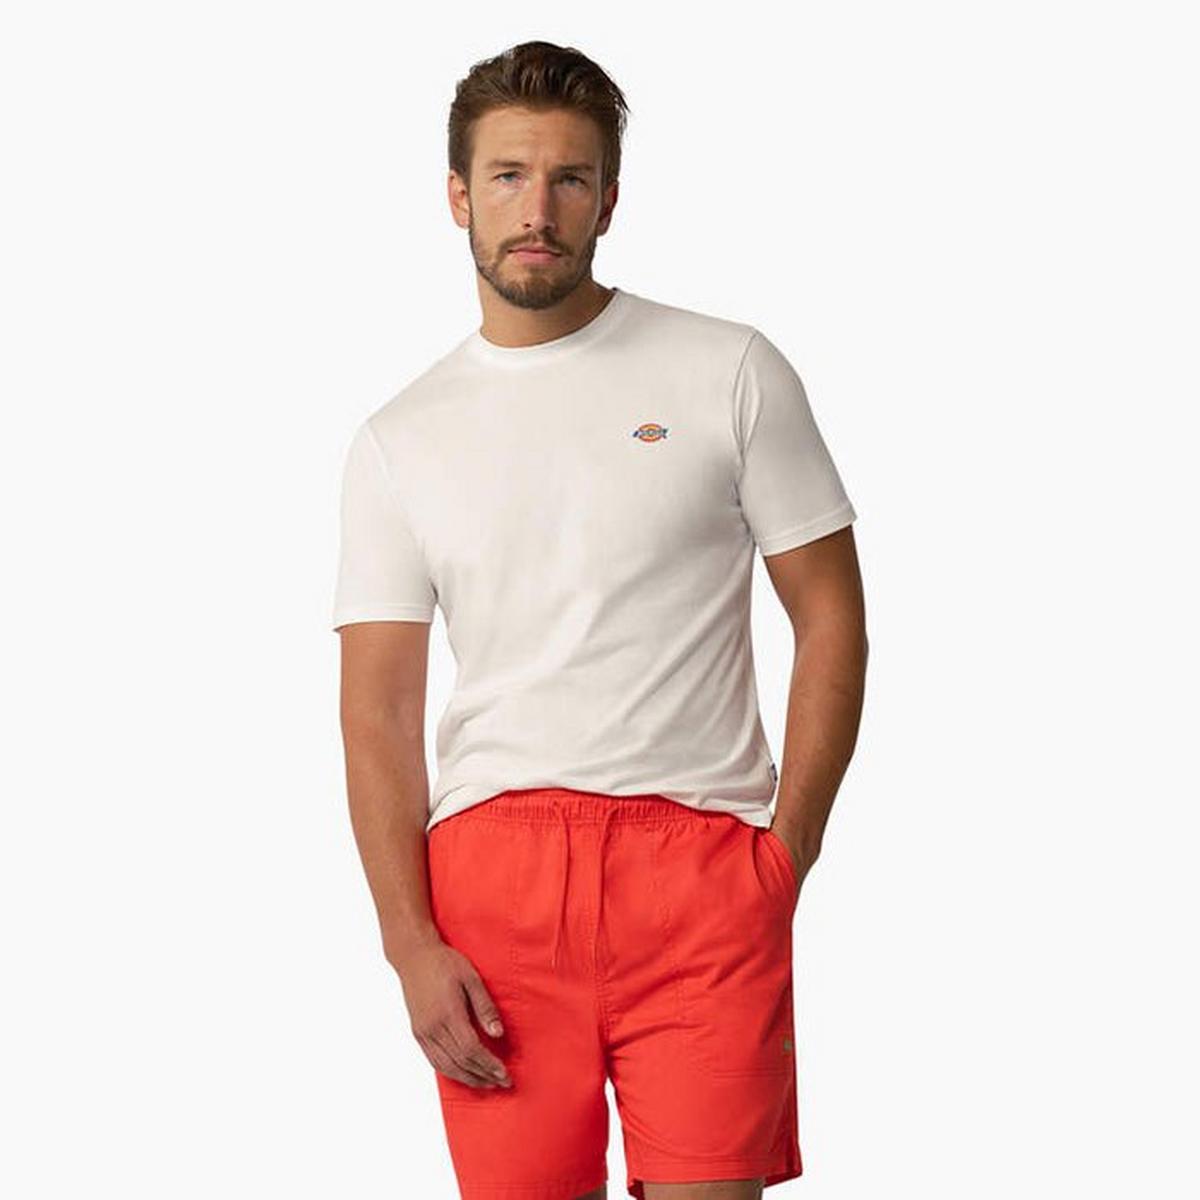 Men's Mapleton Short Sleeve T-Shirt